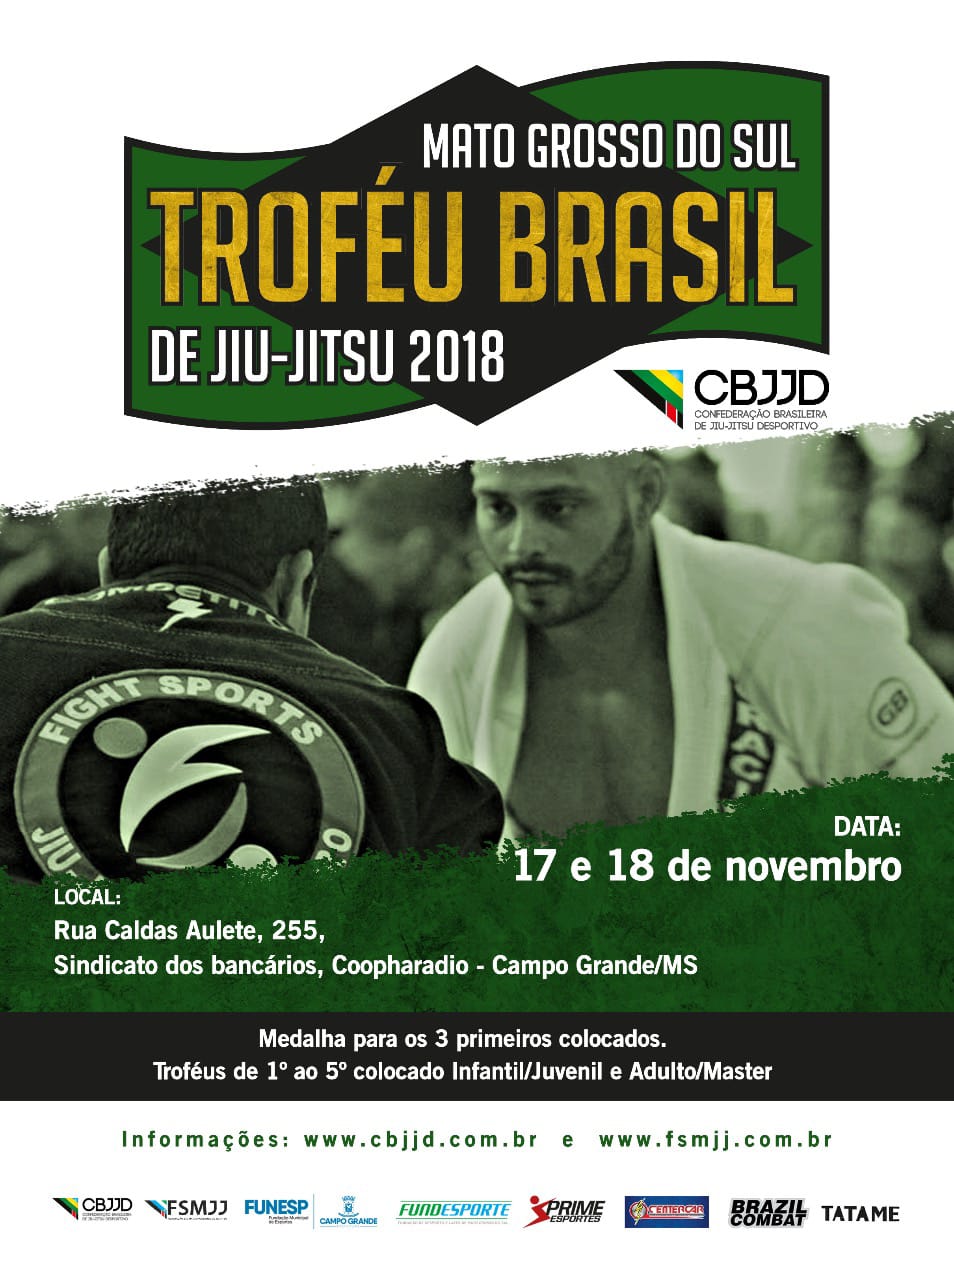 Troféu Brasil em Mato Grosso do Sul fecha a temporada da FJJD-MS no ano de 2018; inscrições abertas